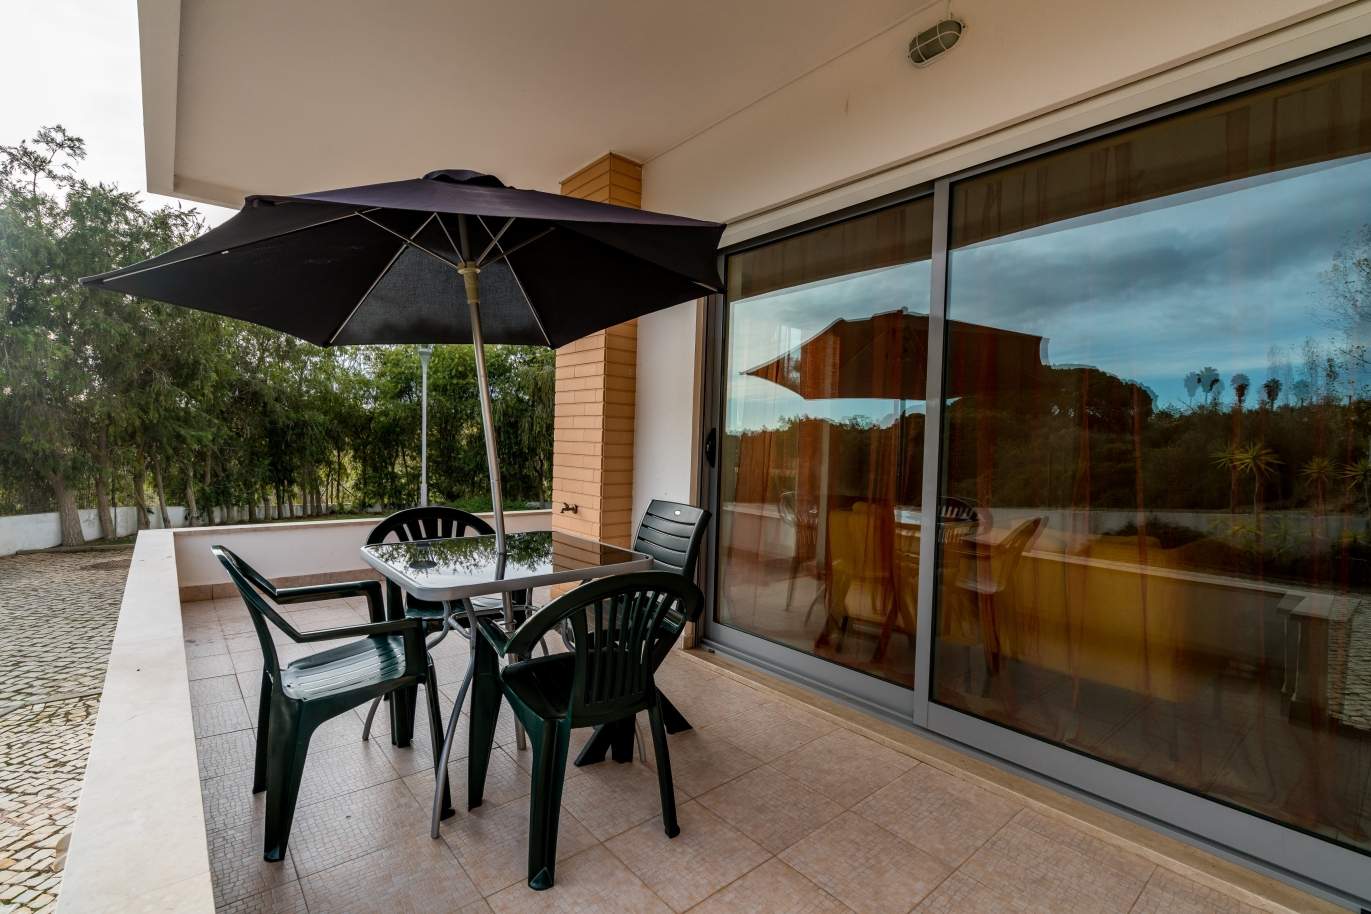 Sale of villa in private condominium in Albufeira, Algarve, Portugal_126874